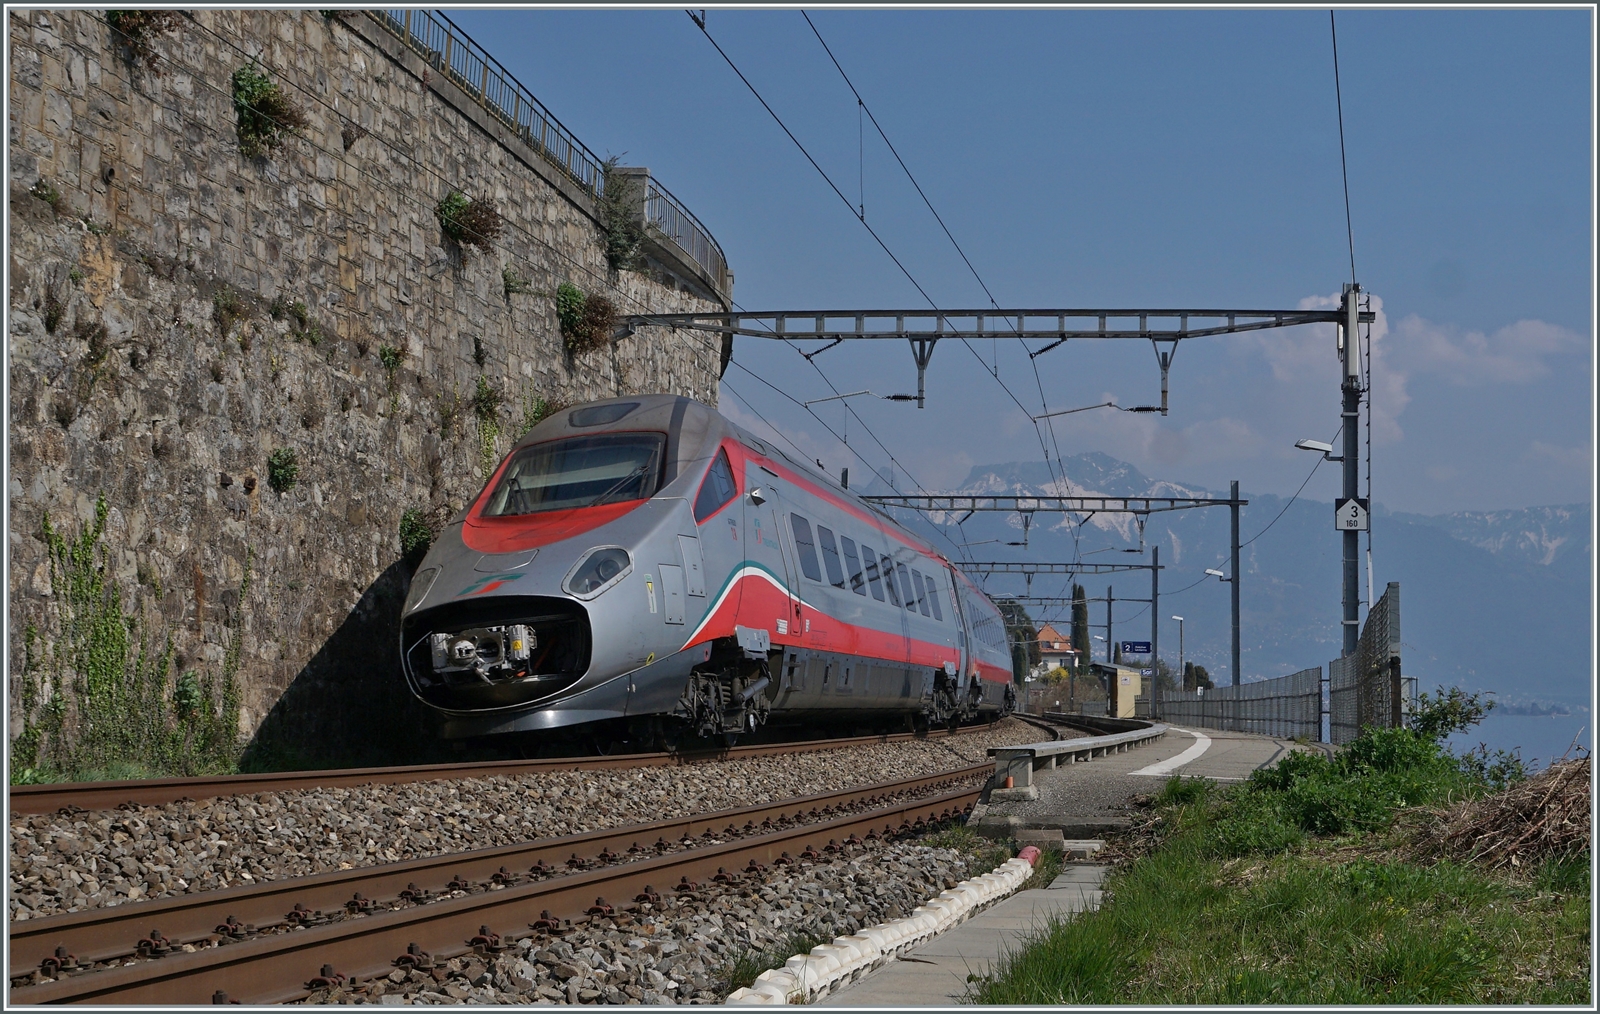 Ein FS Trenitalia ETR 610 (leider mit offener Schnauze) ist als EC auf em Weg von Genève nach Milano und erreicht St-Saphorin.

25. März 2022